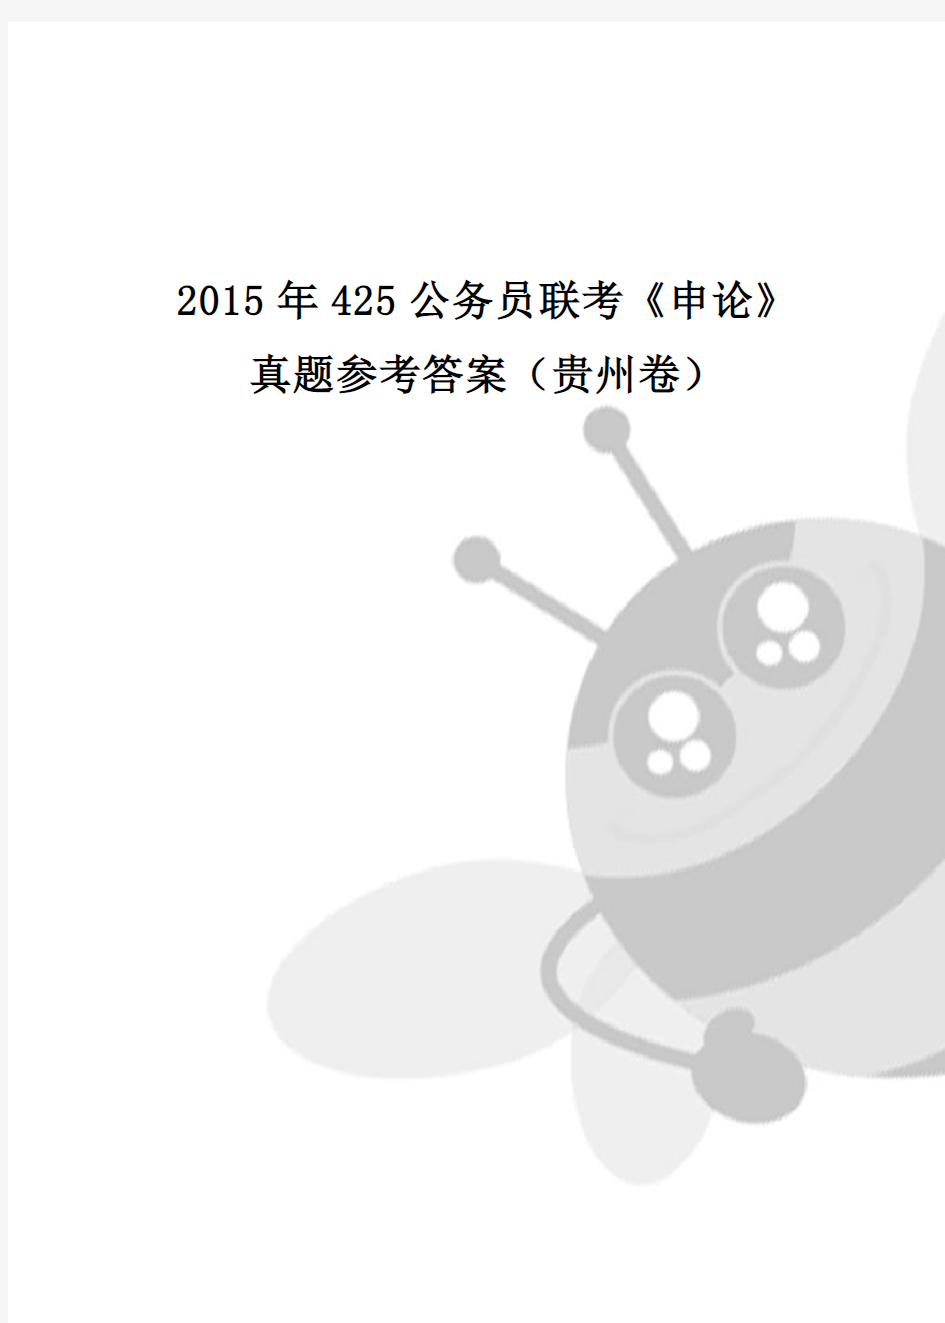 2015年425公务员联考《申论》真题参考答案(贵州卷)